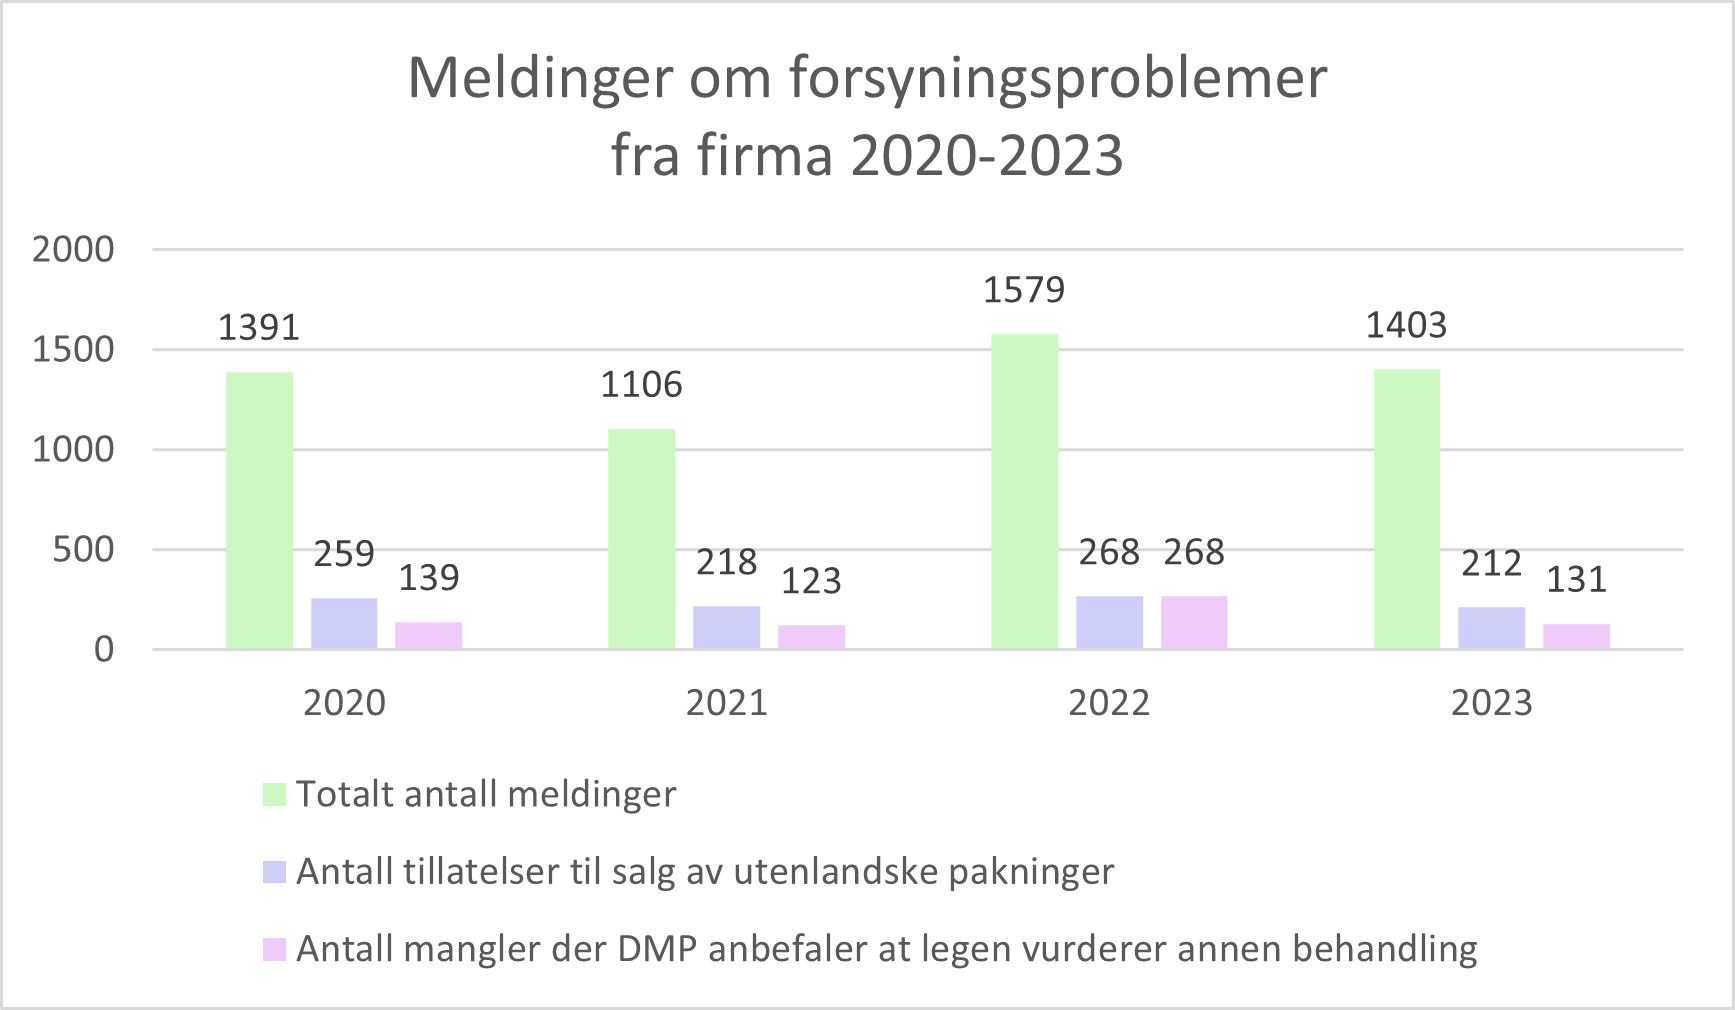 Meldinger om forsyningsproblemer fra firma 2020-2023 figur